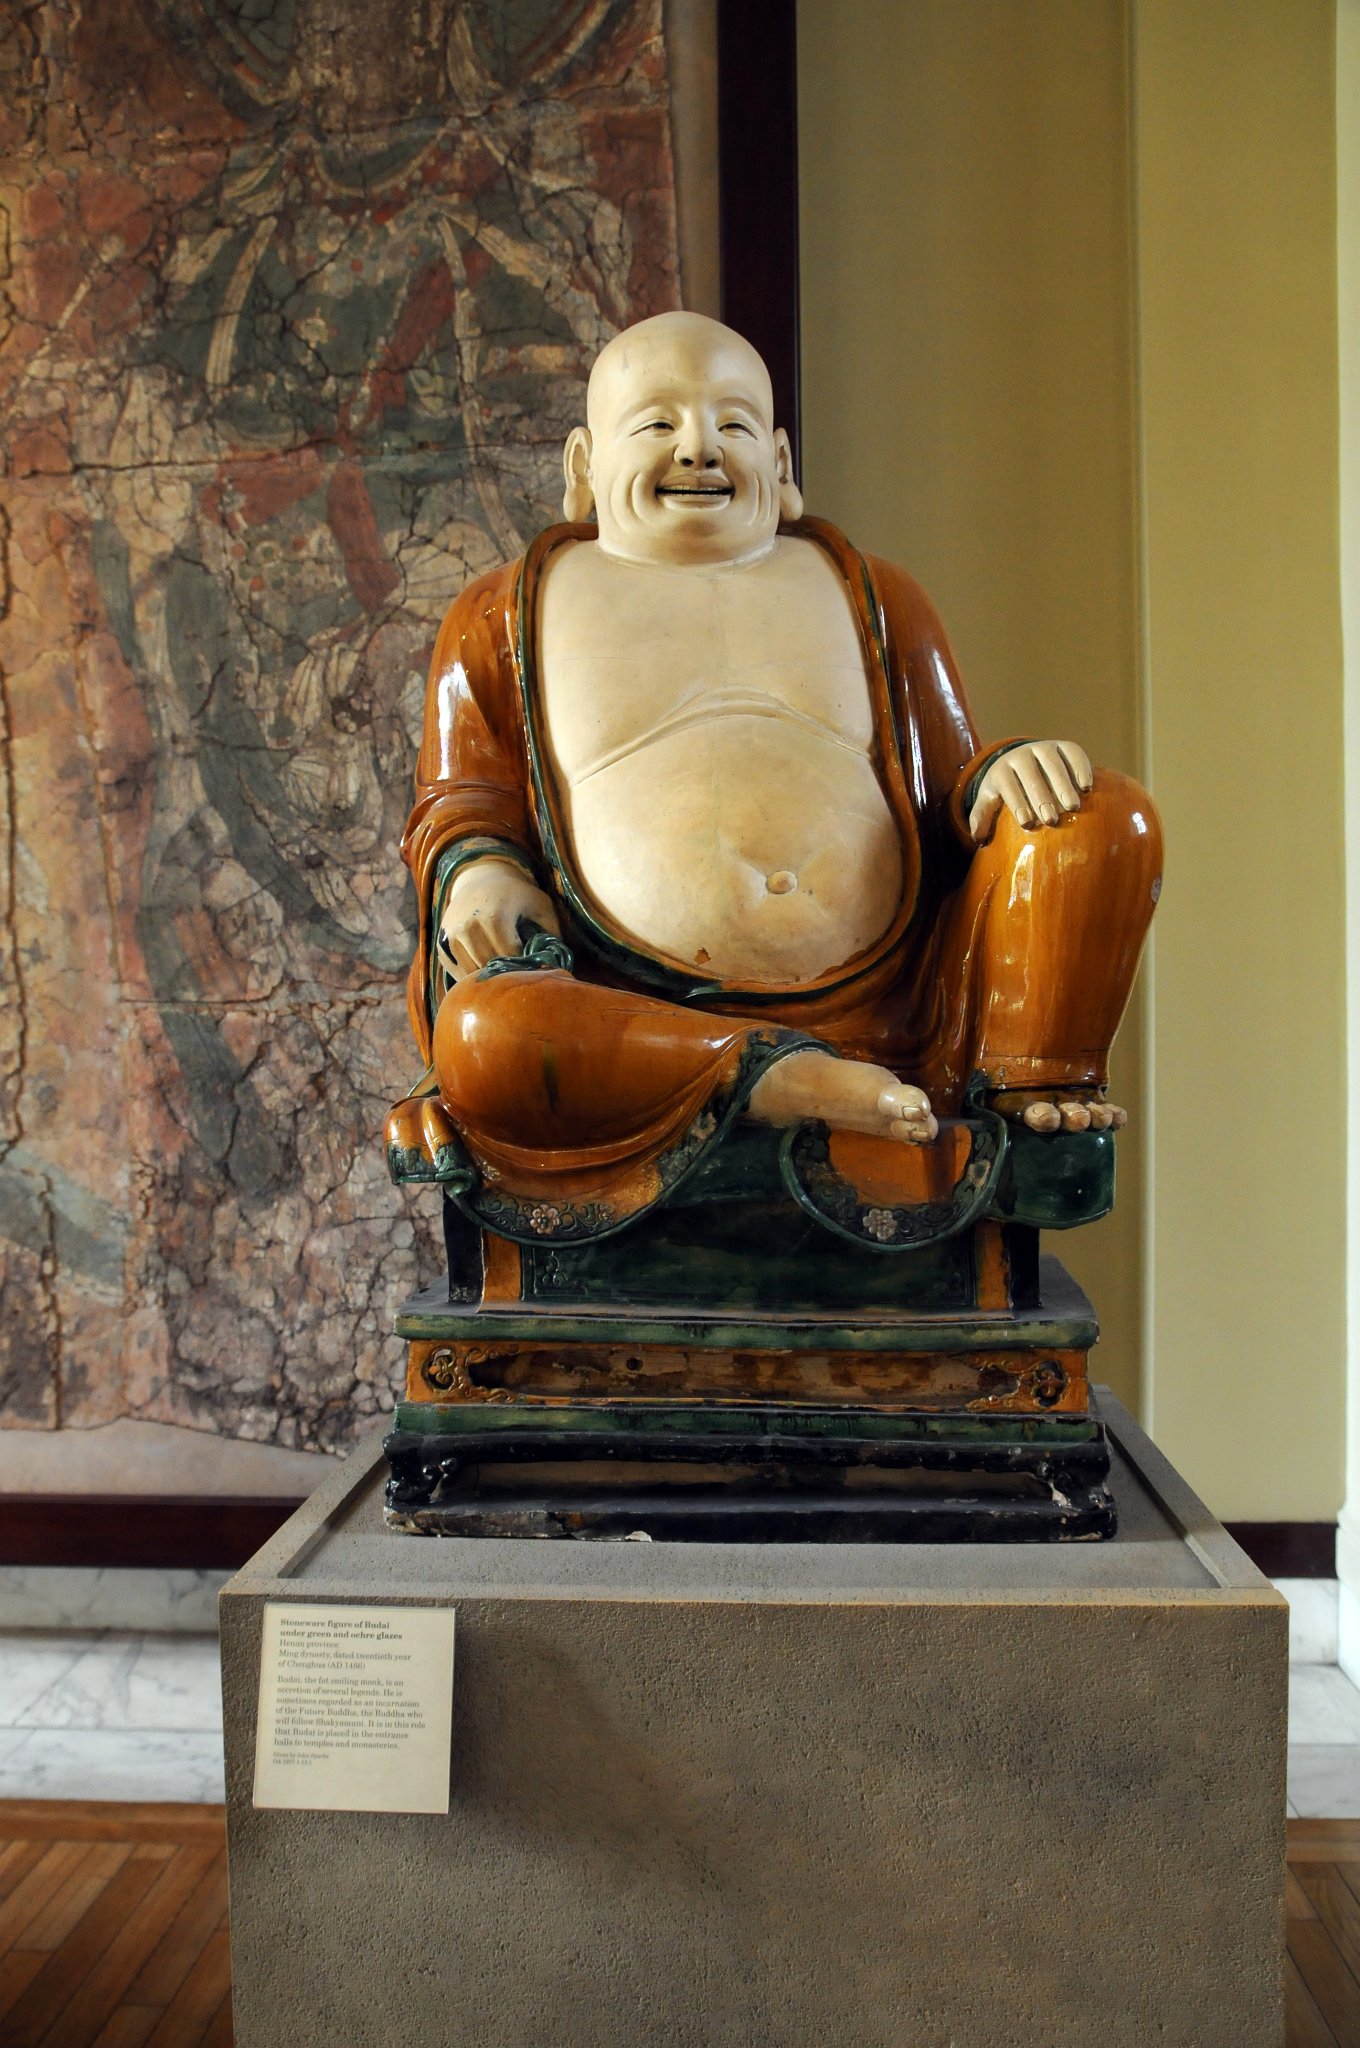 DSC_5955_2.jpg - Kameninová figura Budhy v zelené a okrové glazuře. Henan provincie, Dynastie Ming, 20 léta Chenghua, 1486 našeho letopočtu. Budai, tučný smějící se mnich. několik legend. Někdy je považován za ztělesnění budoucnosti Buddha, Buddha, který bude následovat Šákjamuniho. V této roli je umísťován ve vstupních halách do chrámů a klášterů.